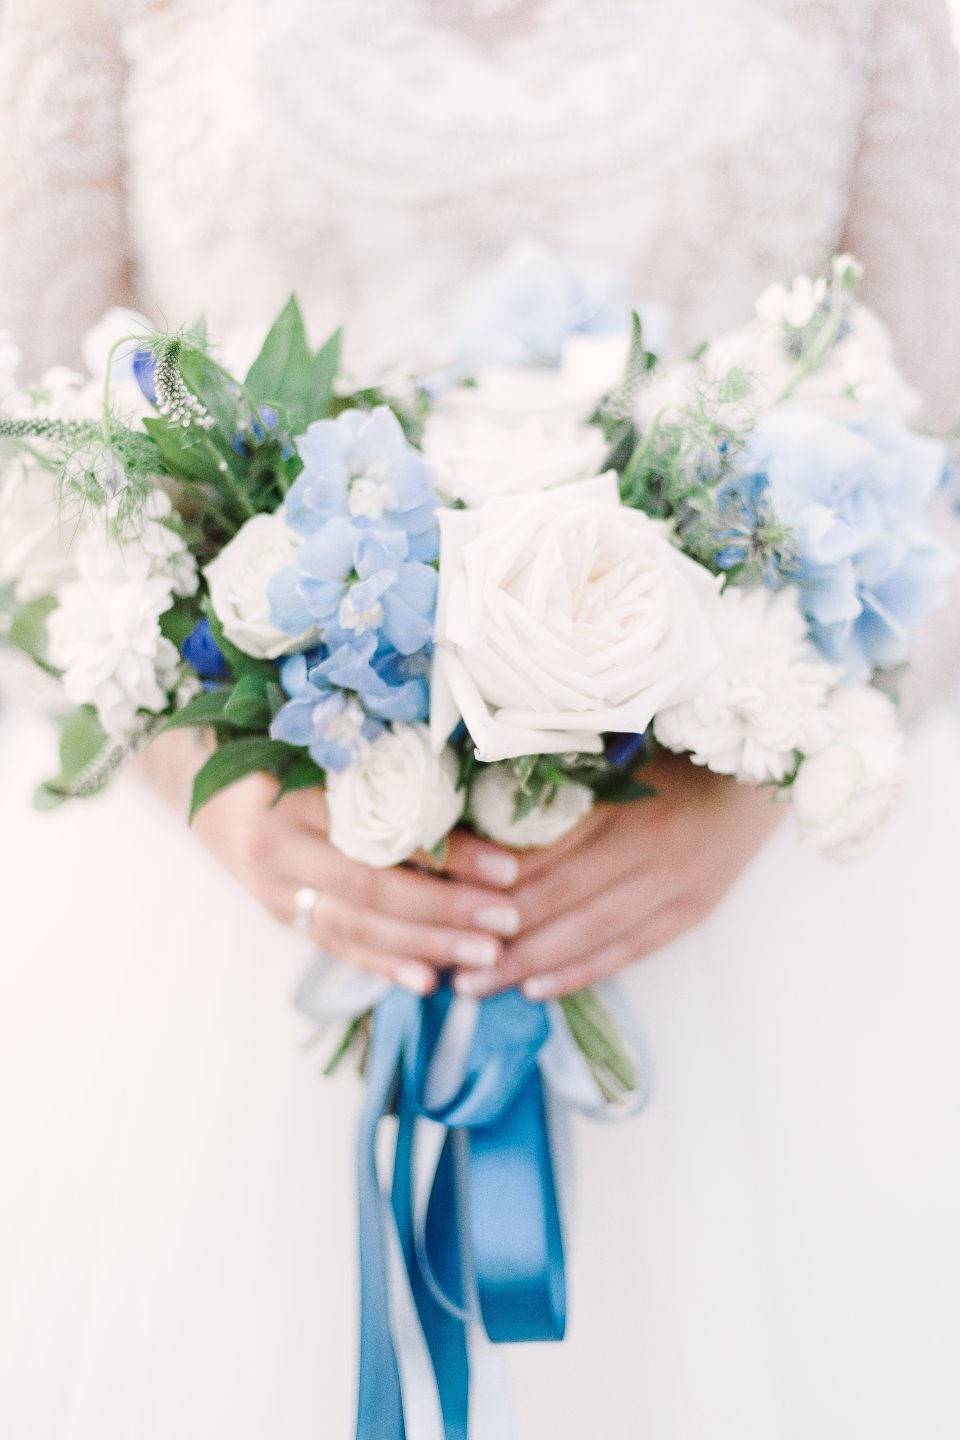 Свадьба в голубом цвете: гармония нежности и чистоты